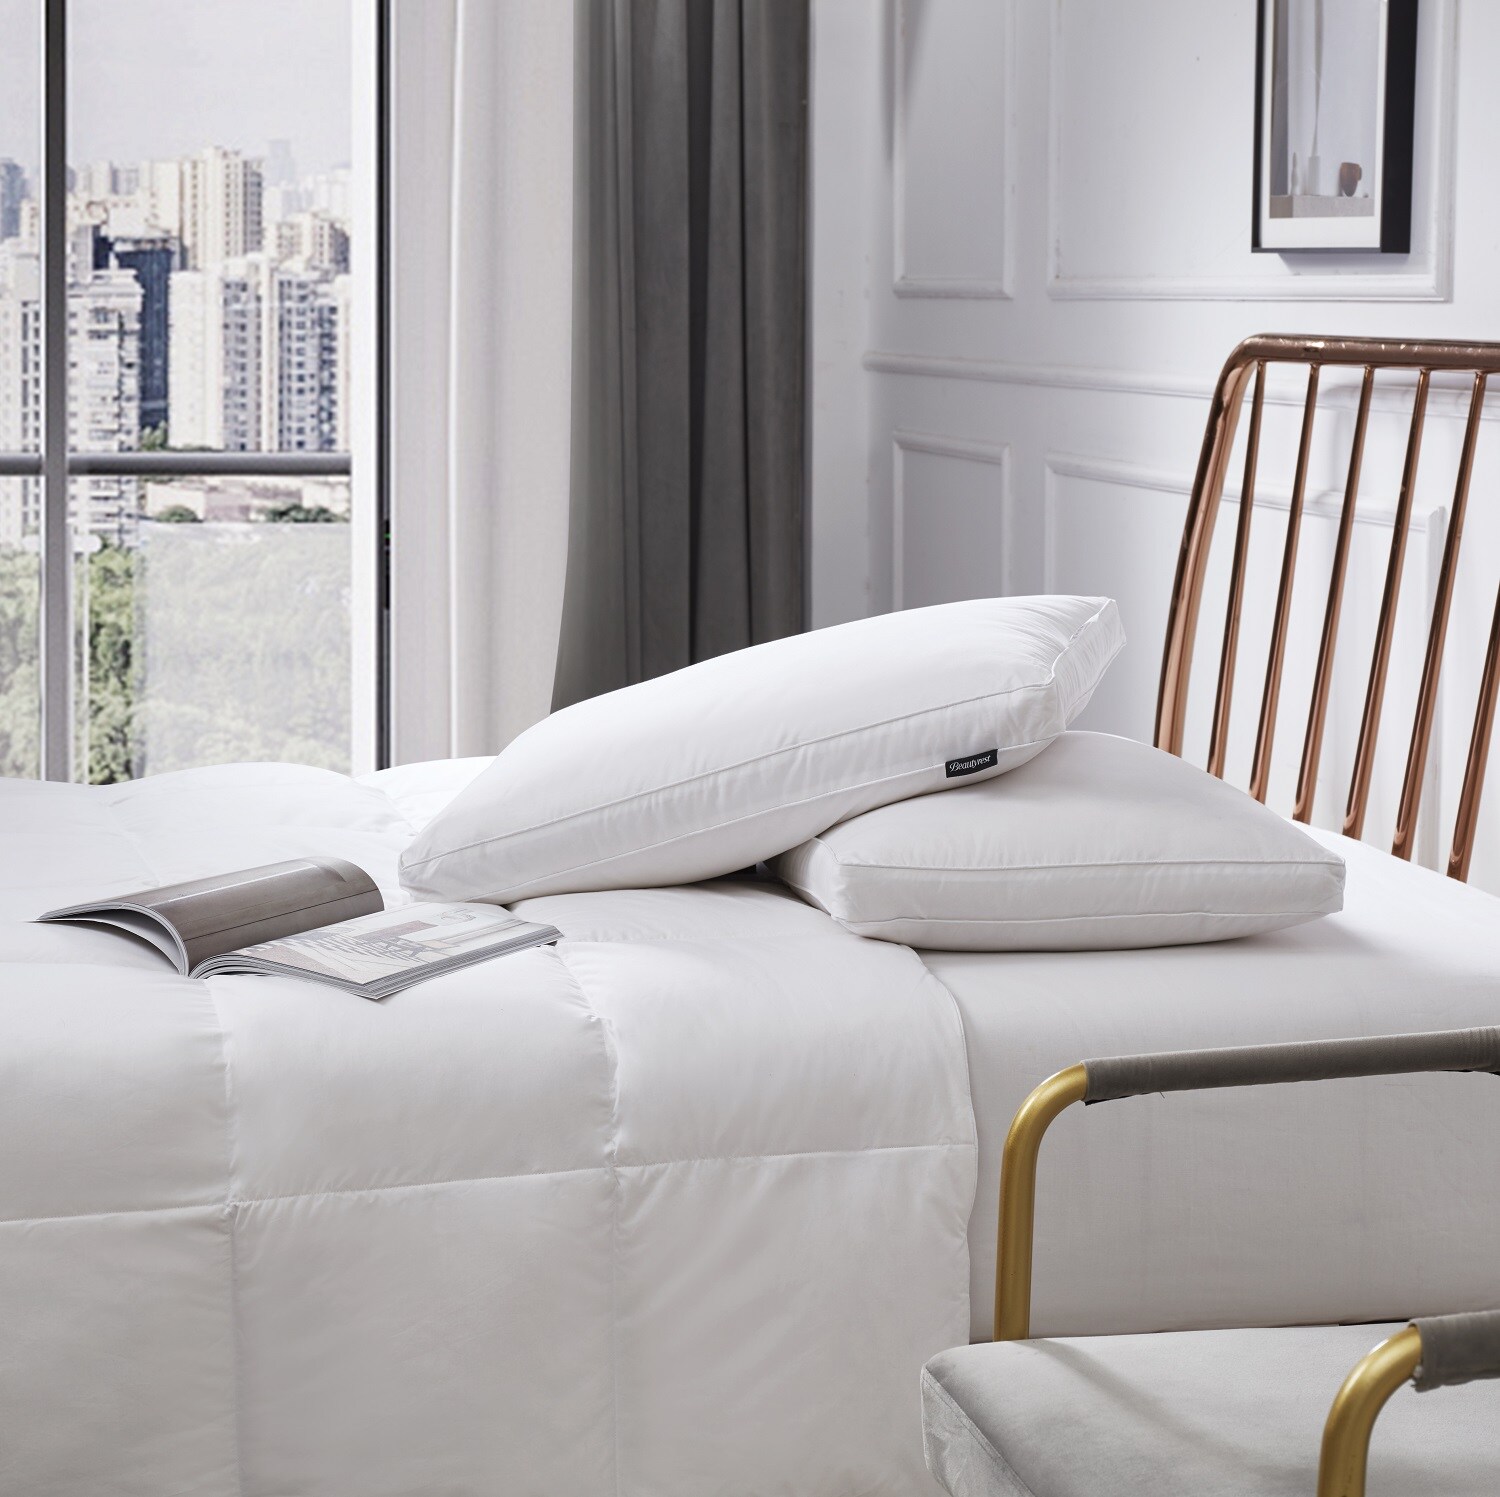 Serta Jumbo Cotton Blend European Down Firm Bed Pillow